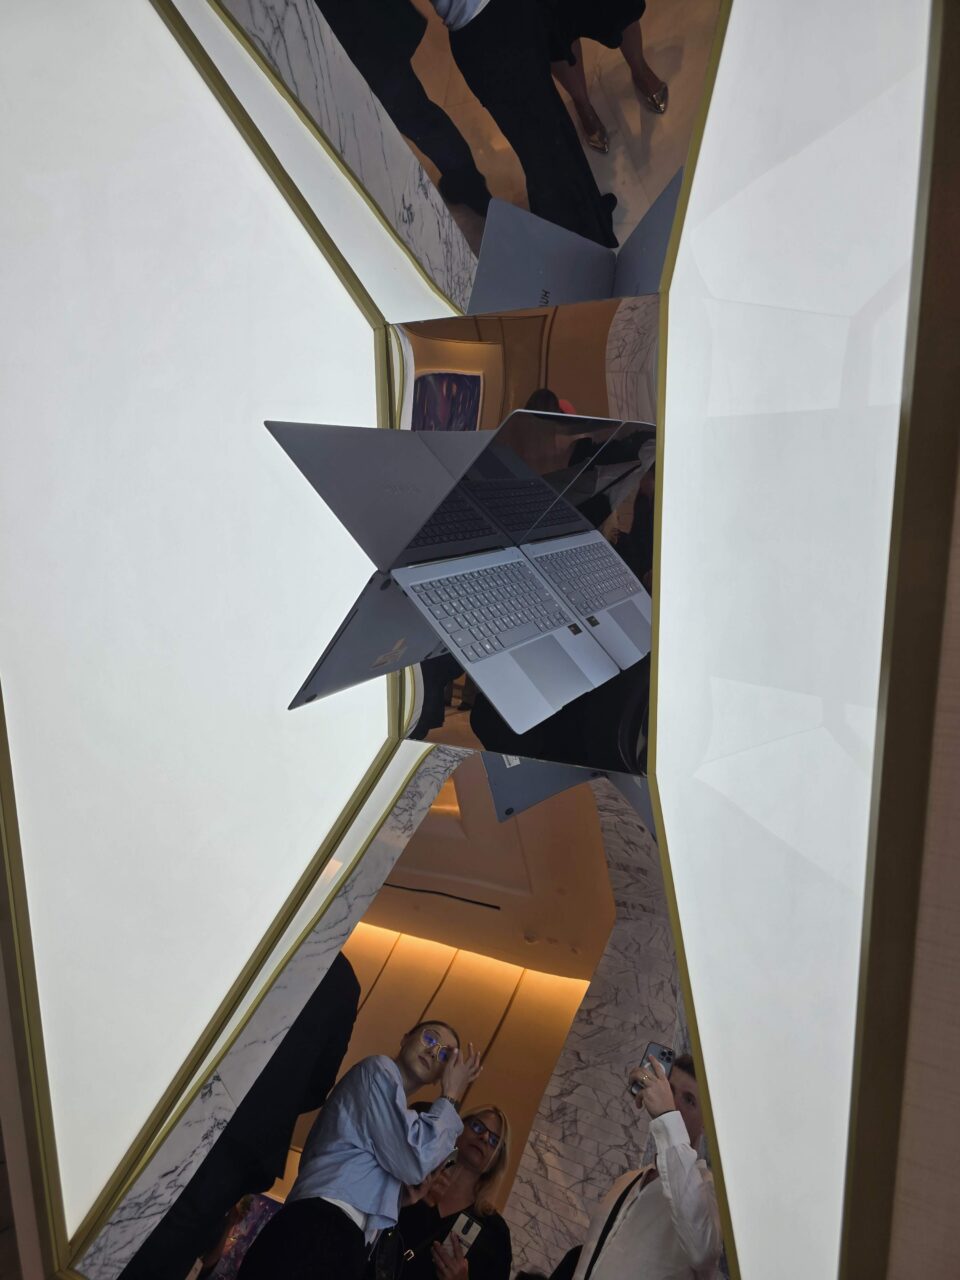 Zdjęcie zrobione wewnątrz budynku, pokazujące grupę ludzi oraz otwarte laptopy Huawei MateBook X Pro 2024 odwrócone do góry nogami, odzwierciedlające się w lustrzanych powierzchniach, co sprawia wrażenie zawieszenia w powietrzu.